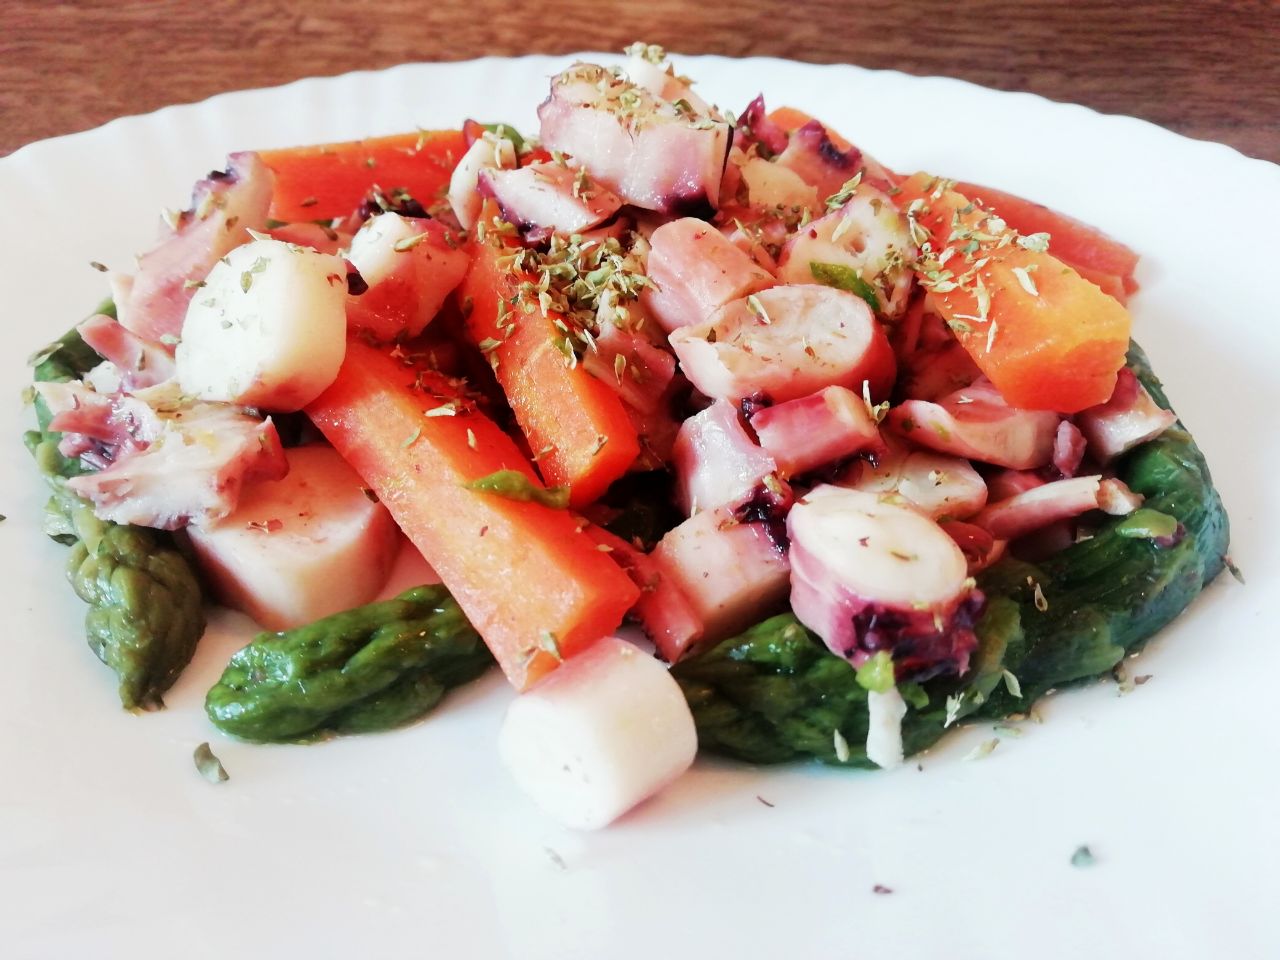 Secondi piatti leggeri a base di pesce: insalata di calamaro asparagi e carote!